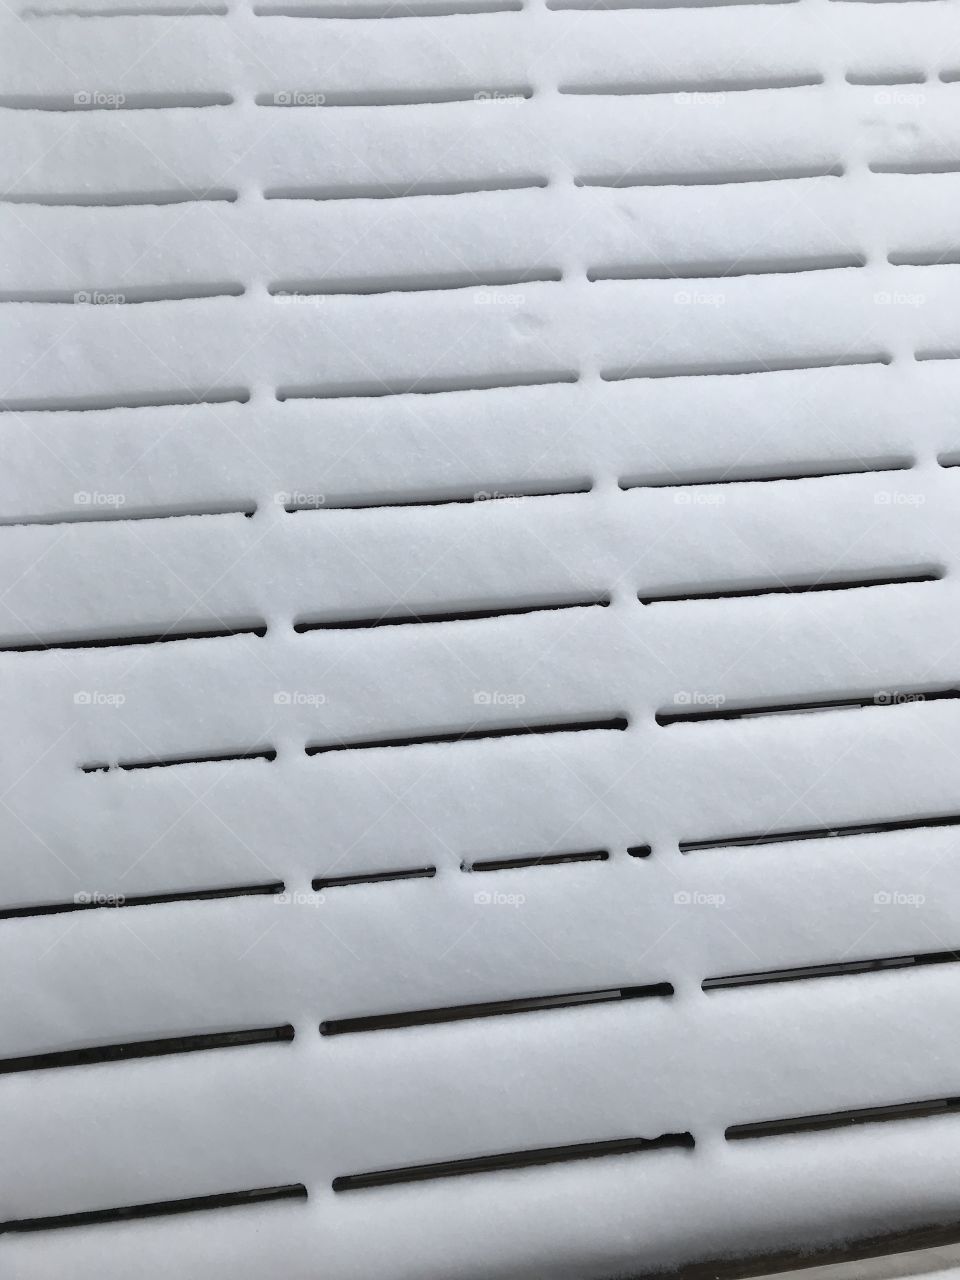 A snowy deck